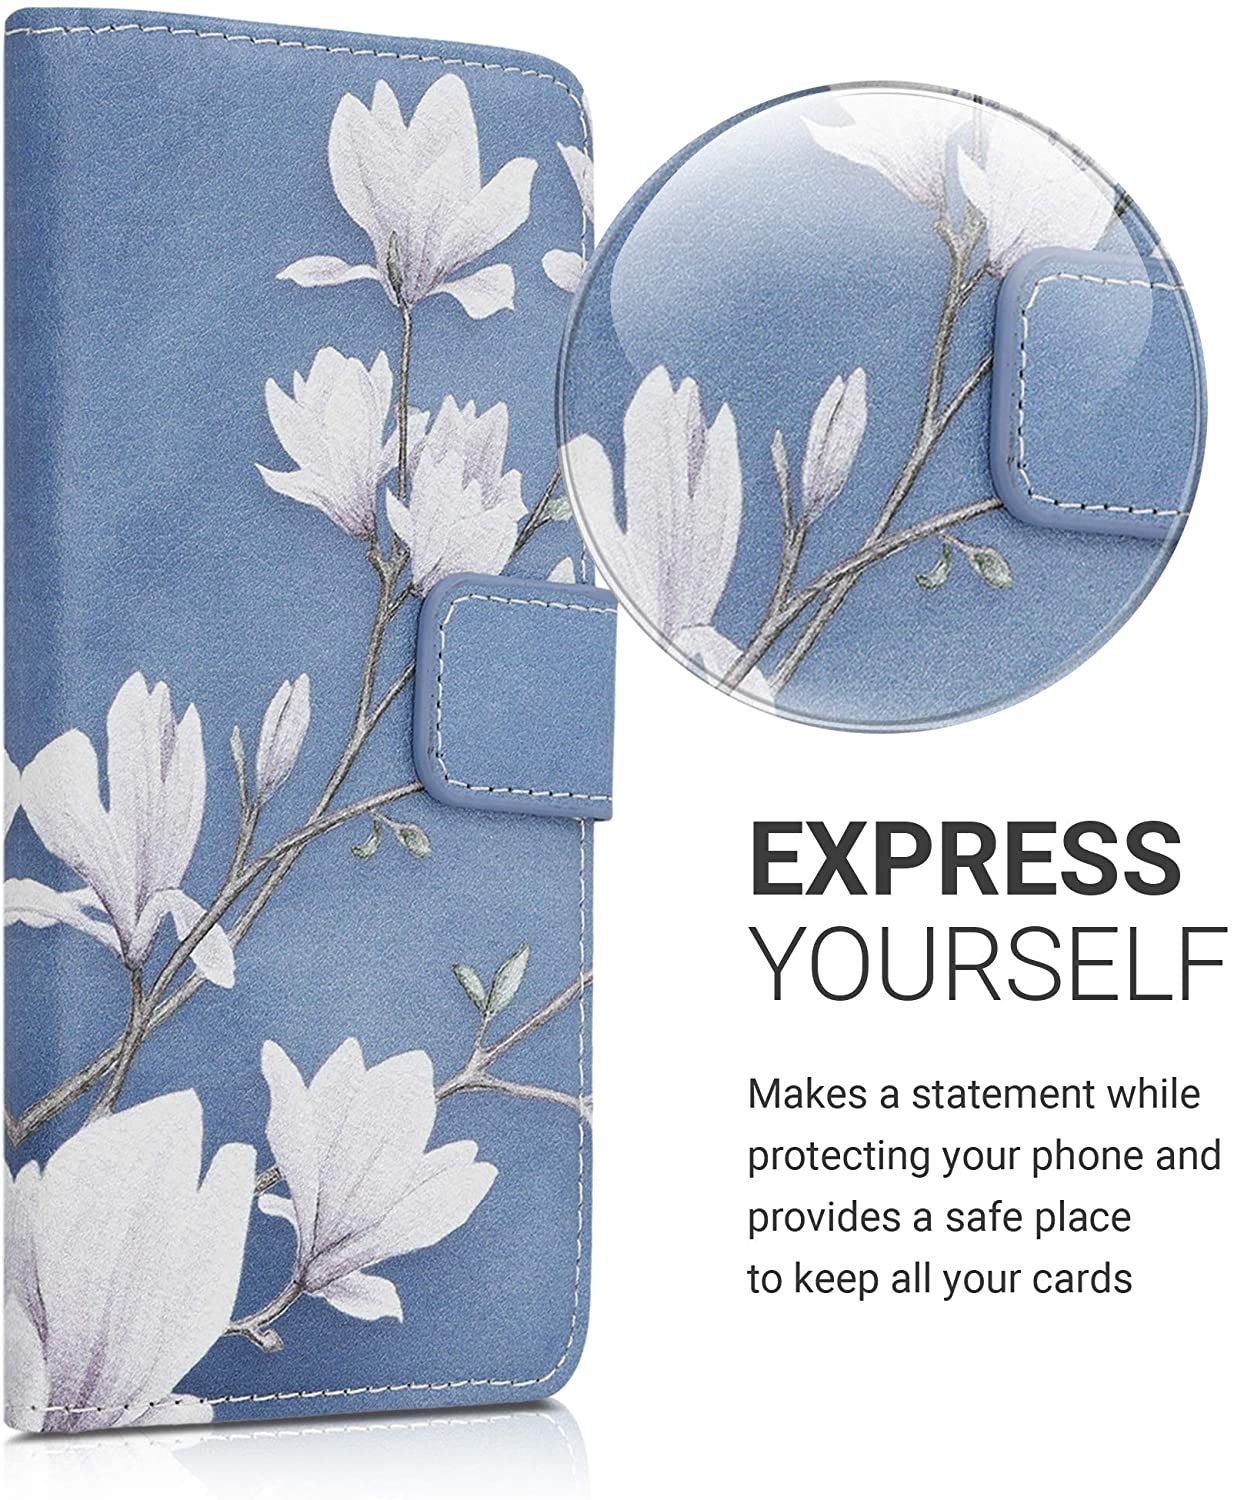 kw-mobile-thiki-portofoli-nokia-3.4-magnolias-taupe-white-blue-grey_1.jpg